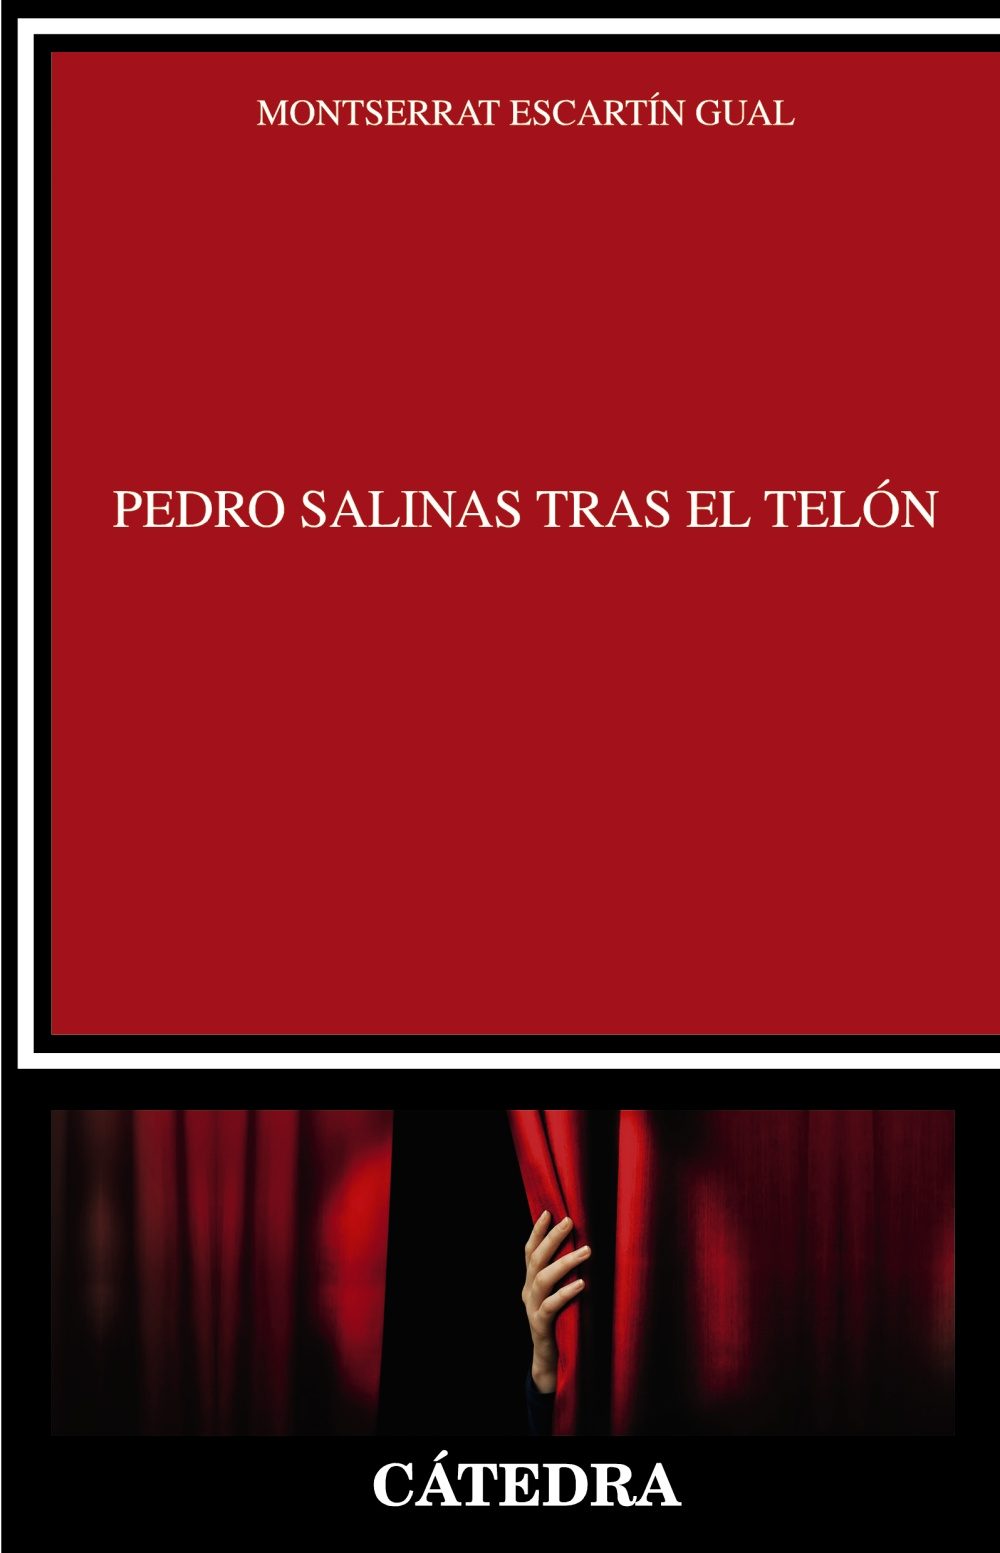 Pedro Salinas tras el telón, de Montserrat Escartín